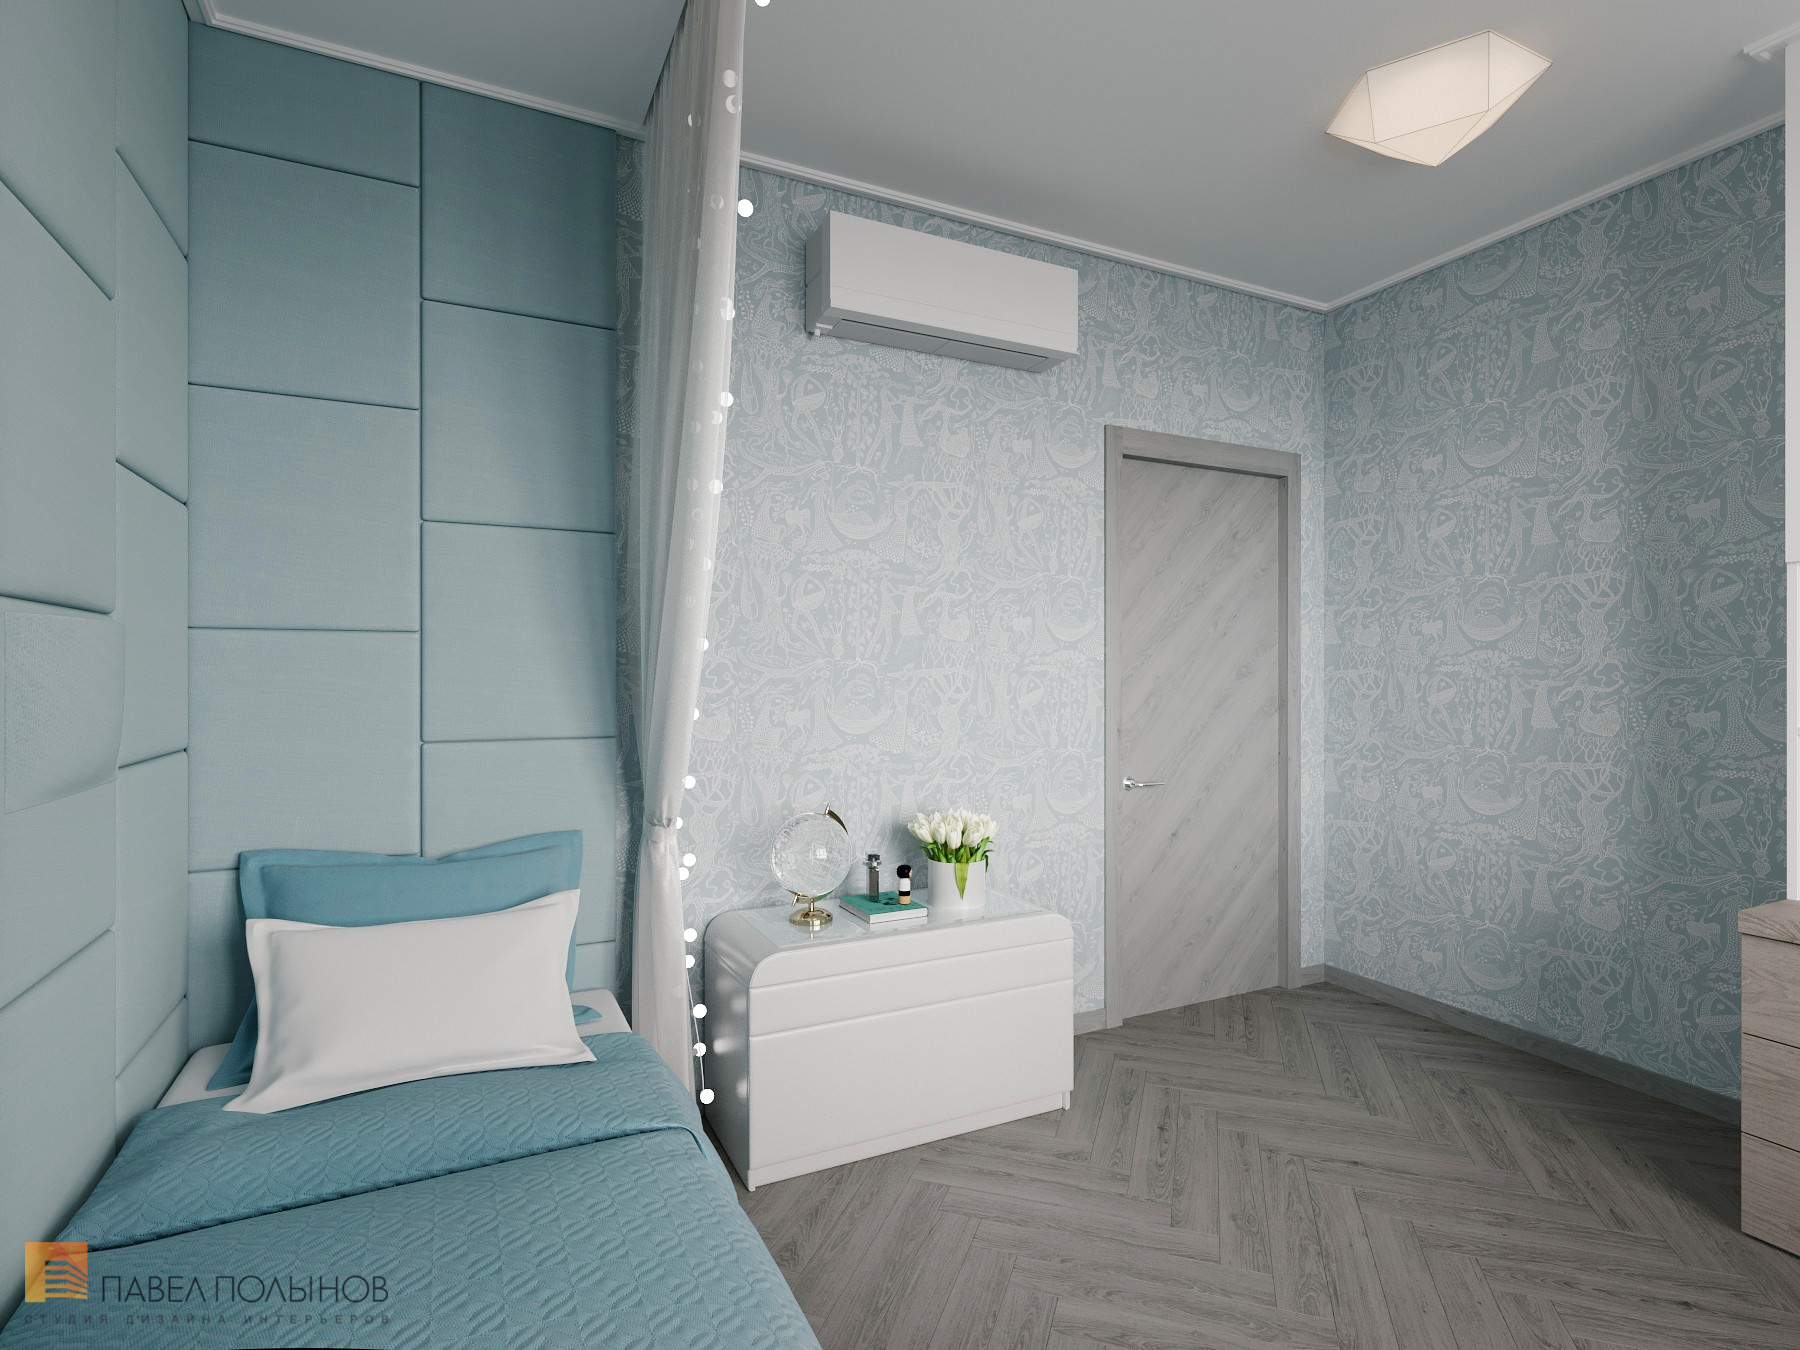 Фото дизайн интерьера детской комнаты для девочки из проекта «Интерьер квартиры в скандинавском стиле, ЖК «Silver», 146 кв.м.»